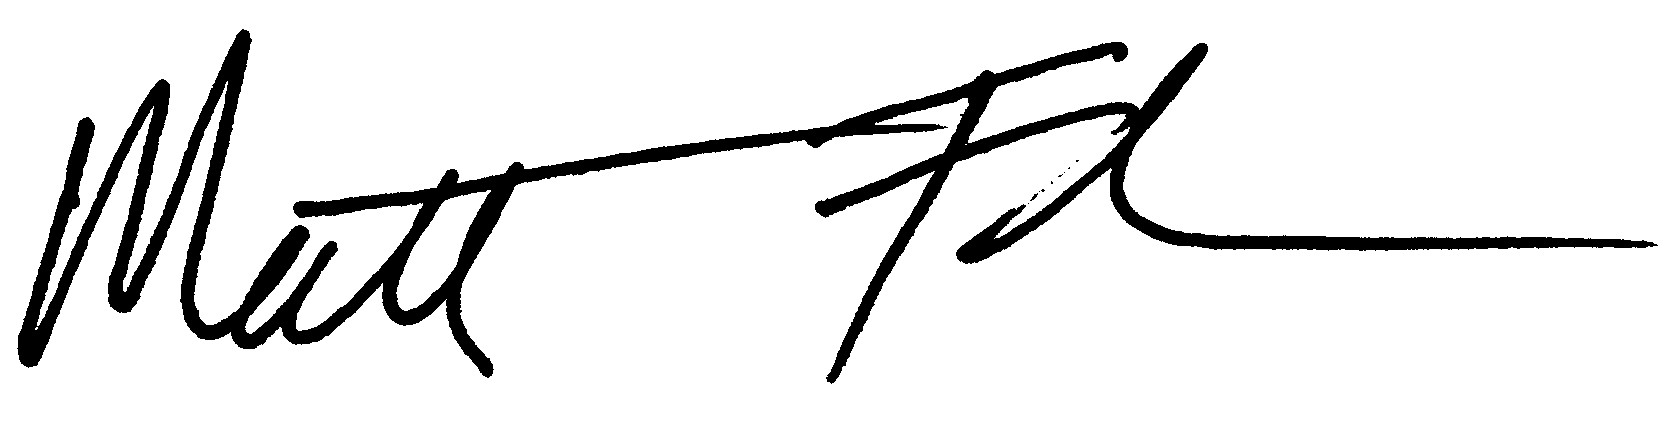 Flake JPEG Signature.jpg